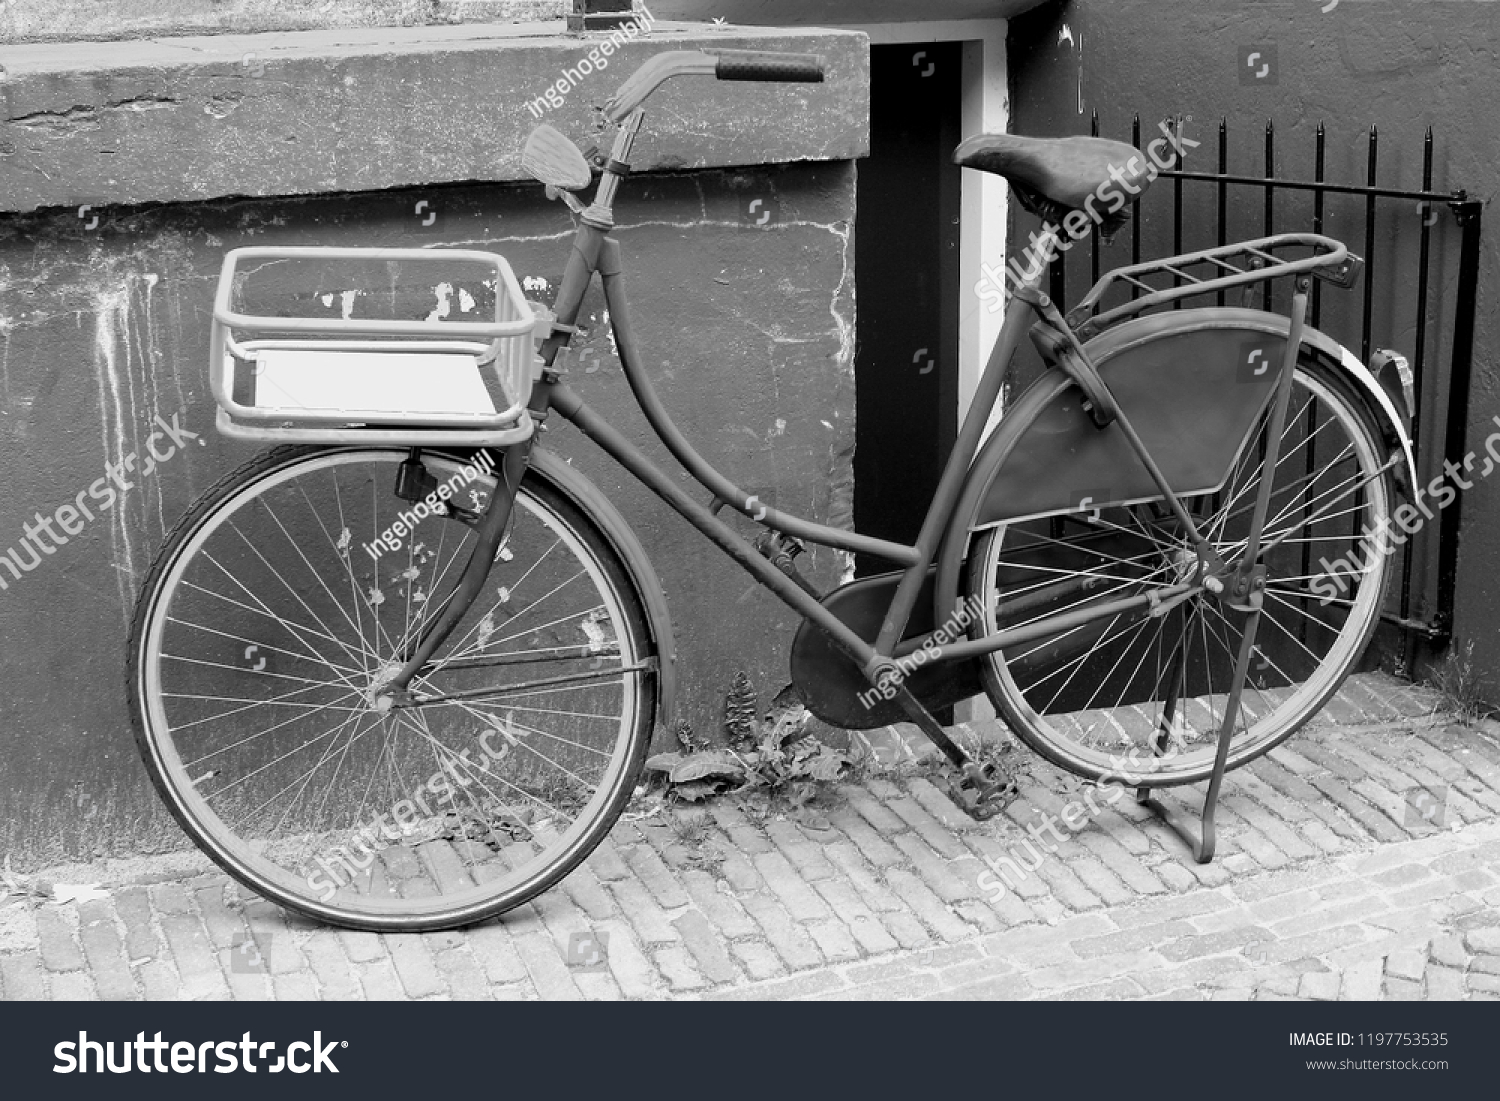 vintage ladies bike